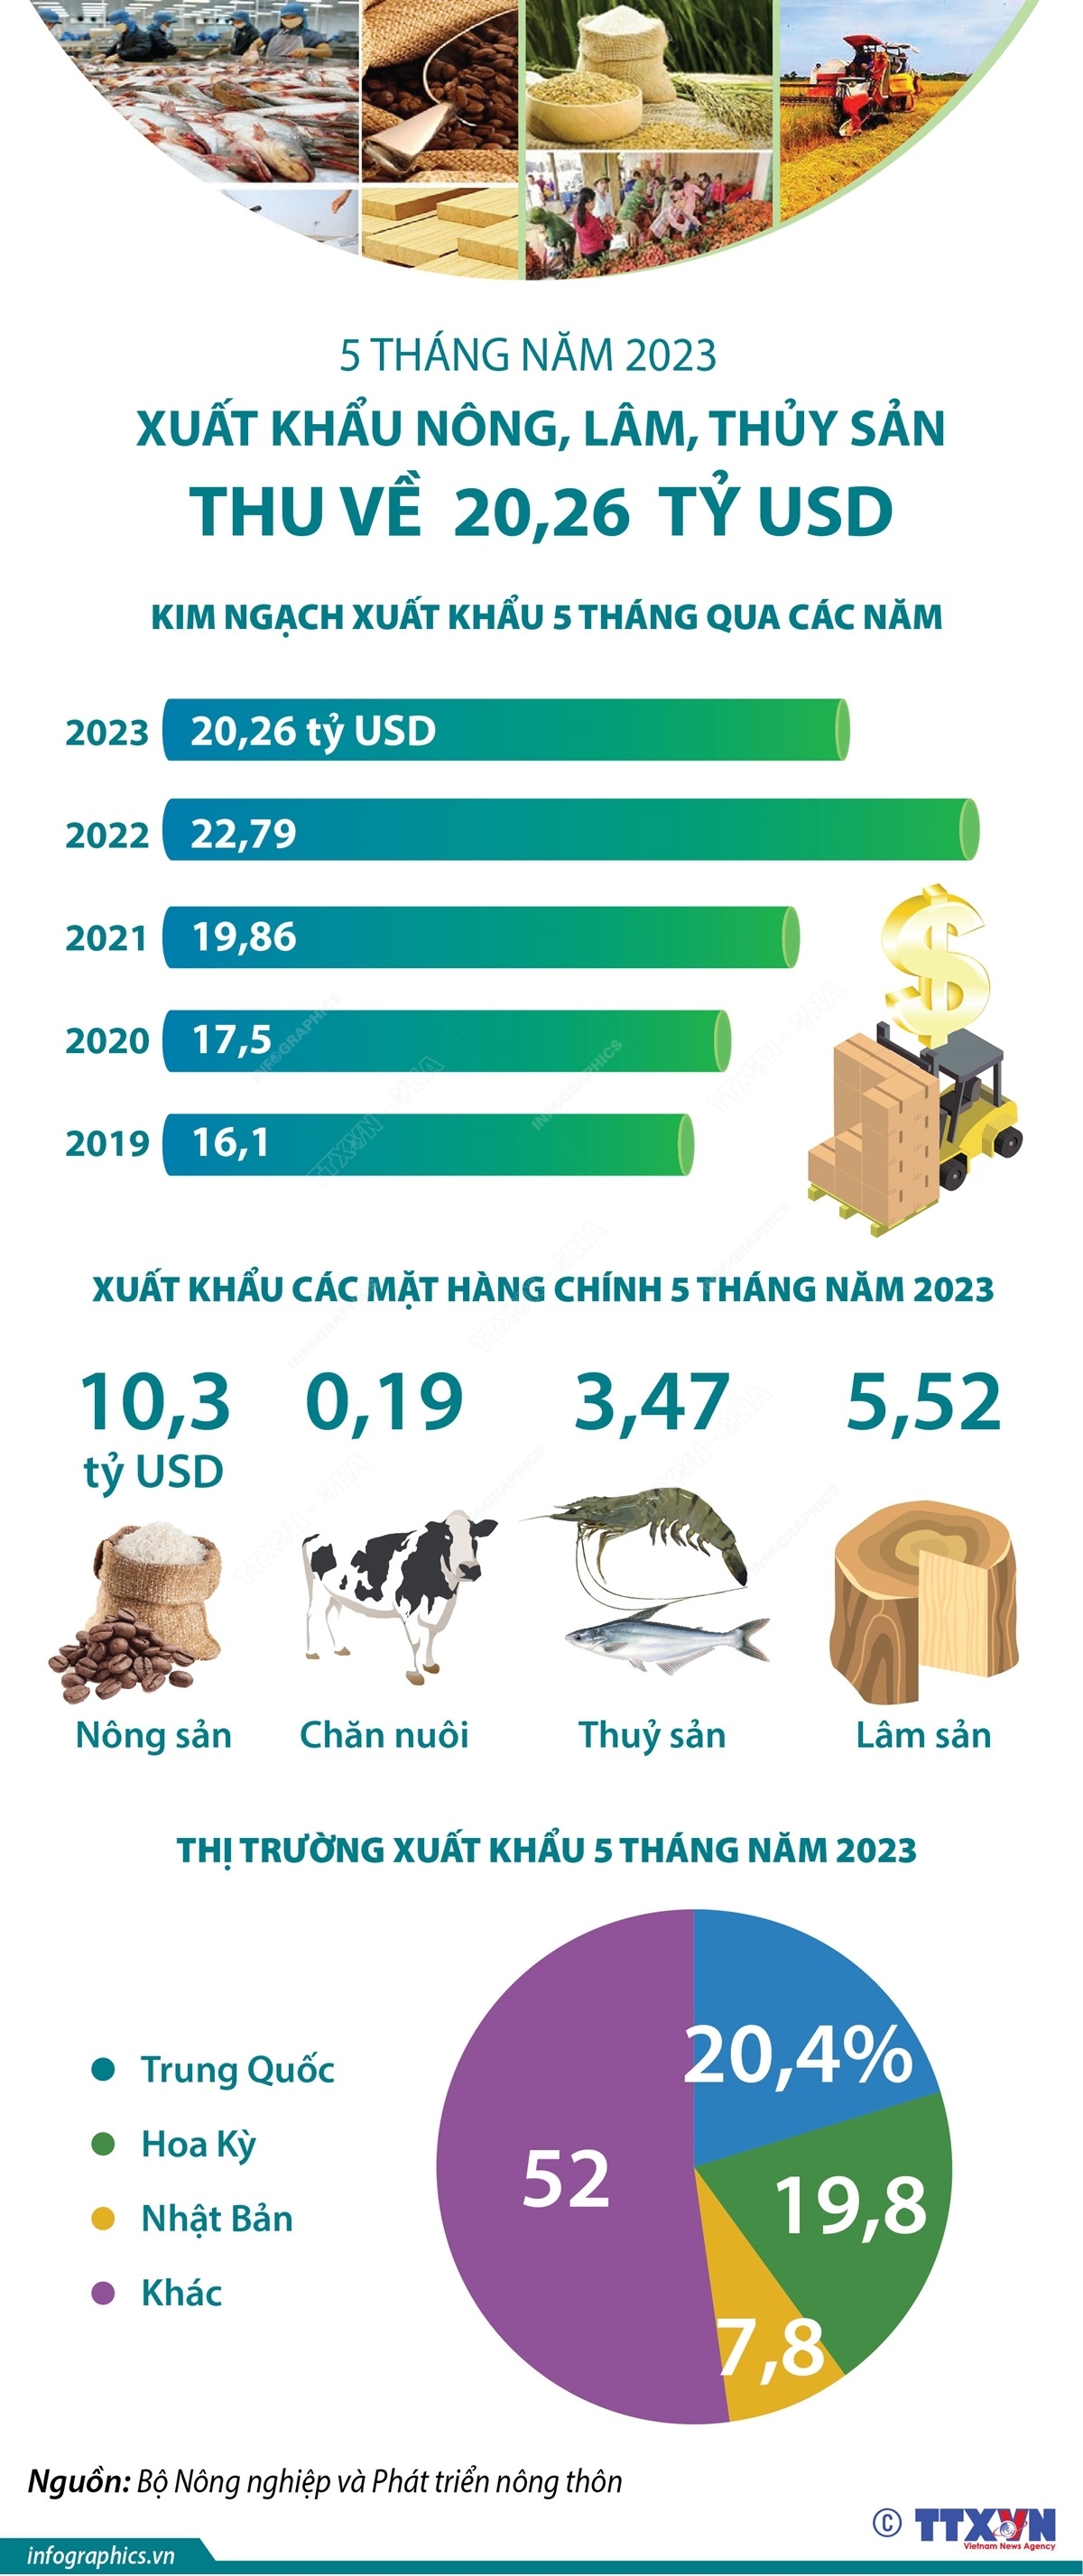 5 tháng năm 2023: Xuất khẩu nông, lâm, thủy sản thu về 20,26 tỷ USD